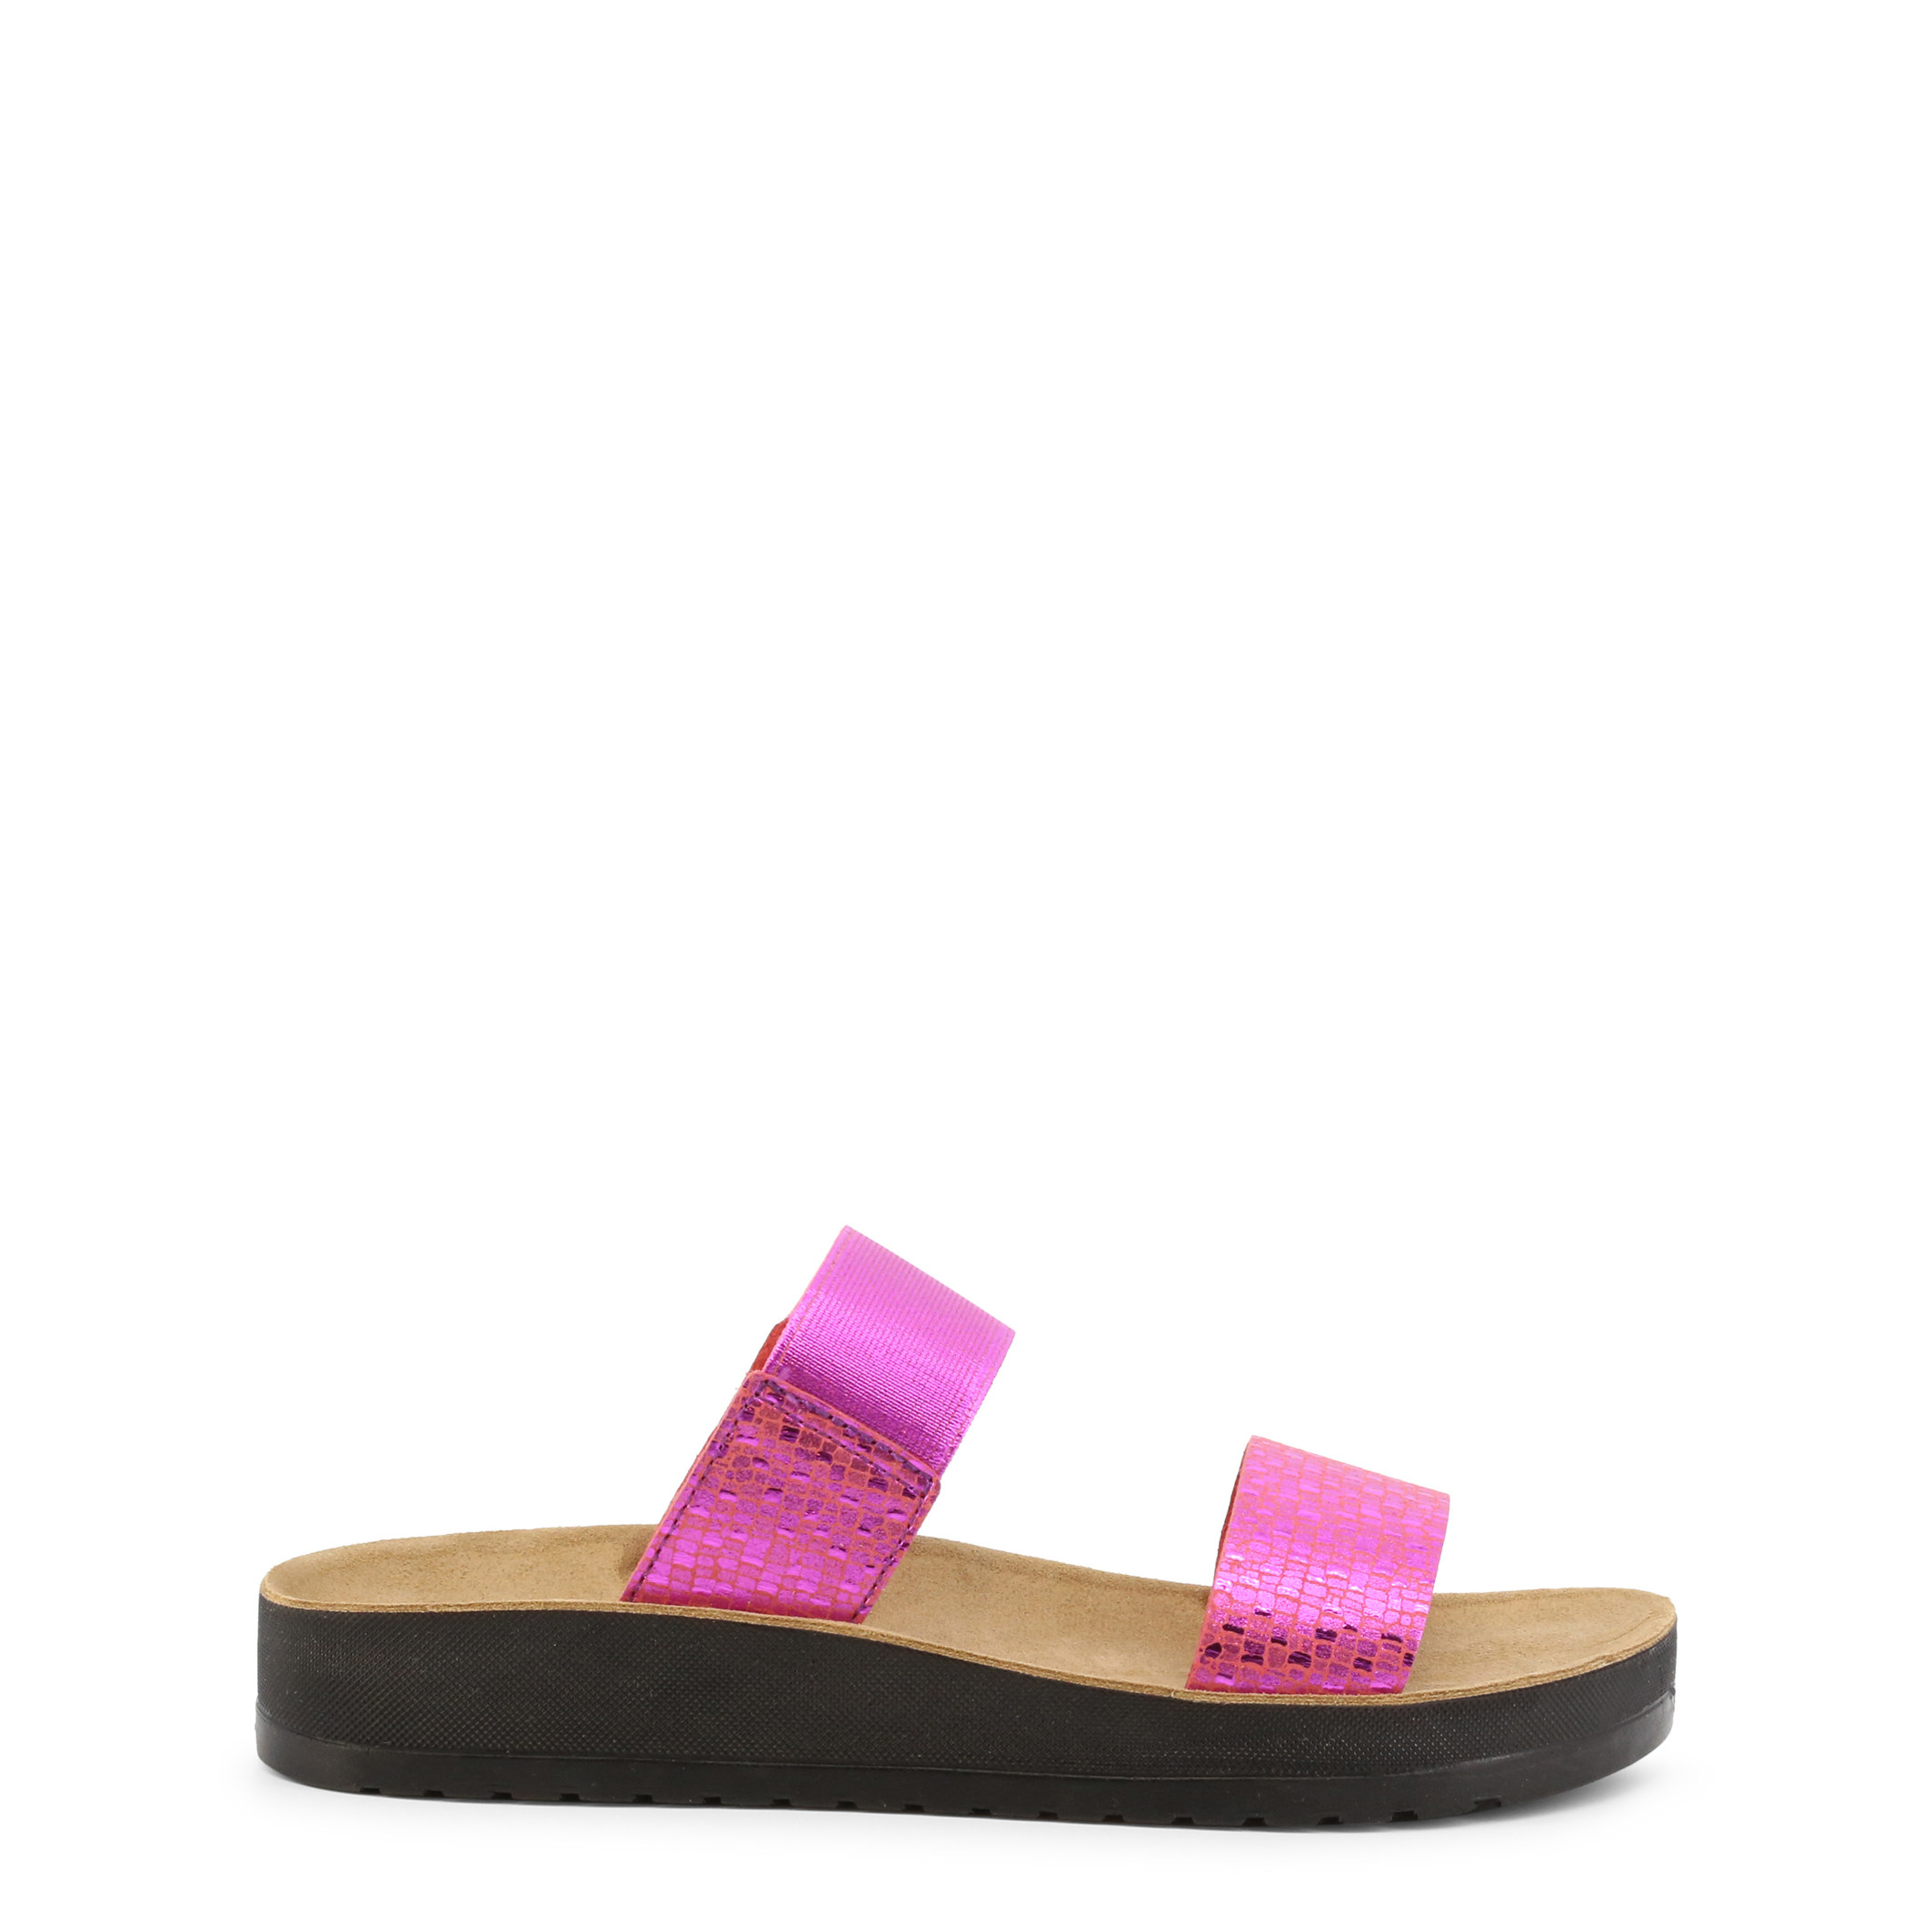 Dr Scholl Pink Flip Flops for Women - GAIA-F29269